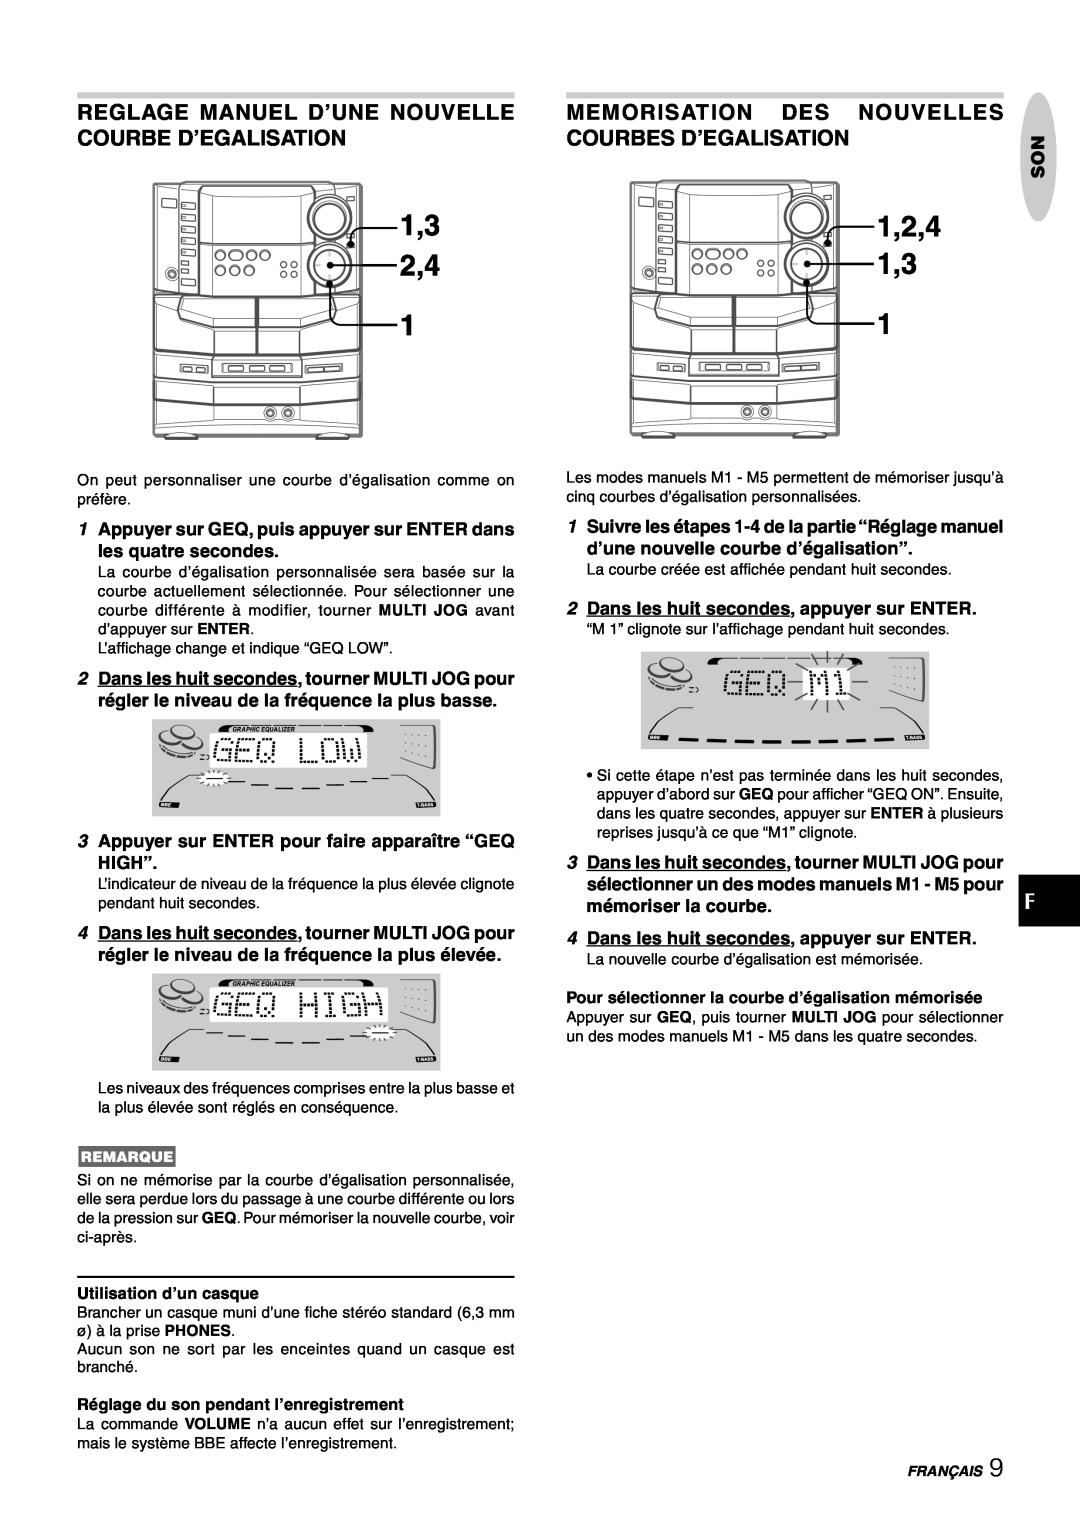 Sony NSX-AJ80 Memorisation Des Nouvelles, Courbes D’Egalisation, 1Appuyer sur GEQ, puis appuyer sur ENTER dans, High” 